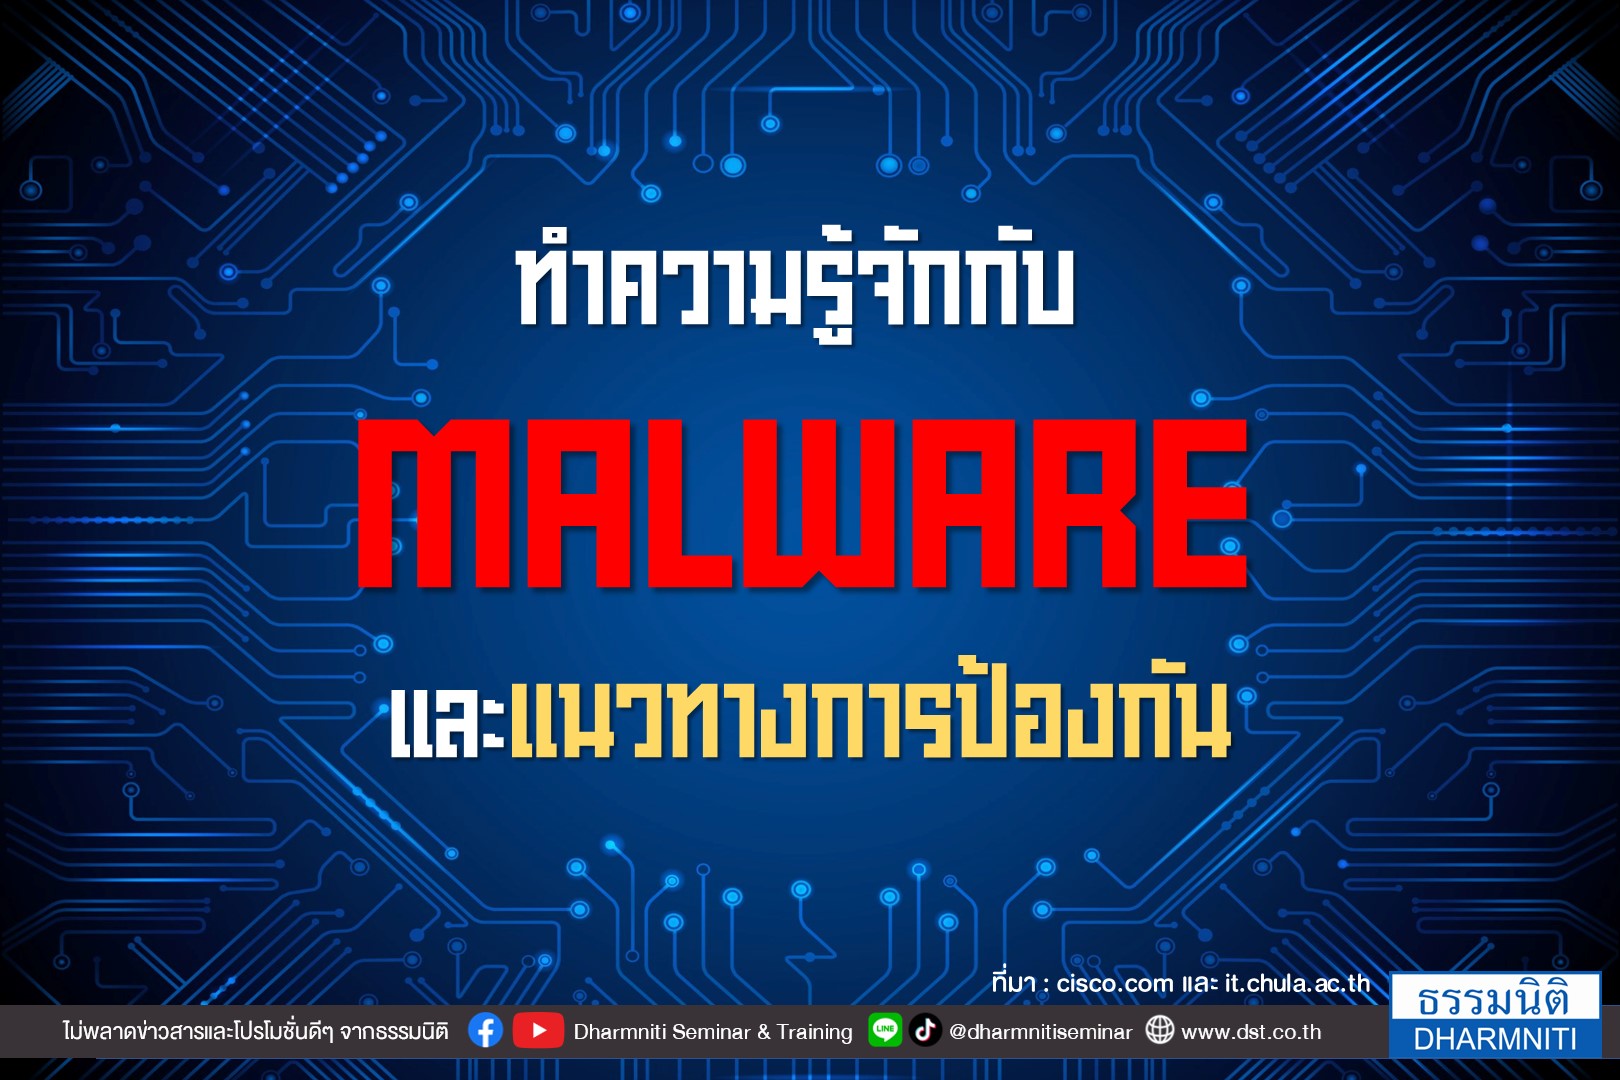 ทำความรู้จักกับ malware และแนวทางป้องกัน